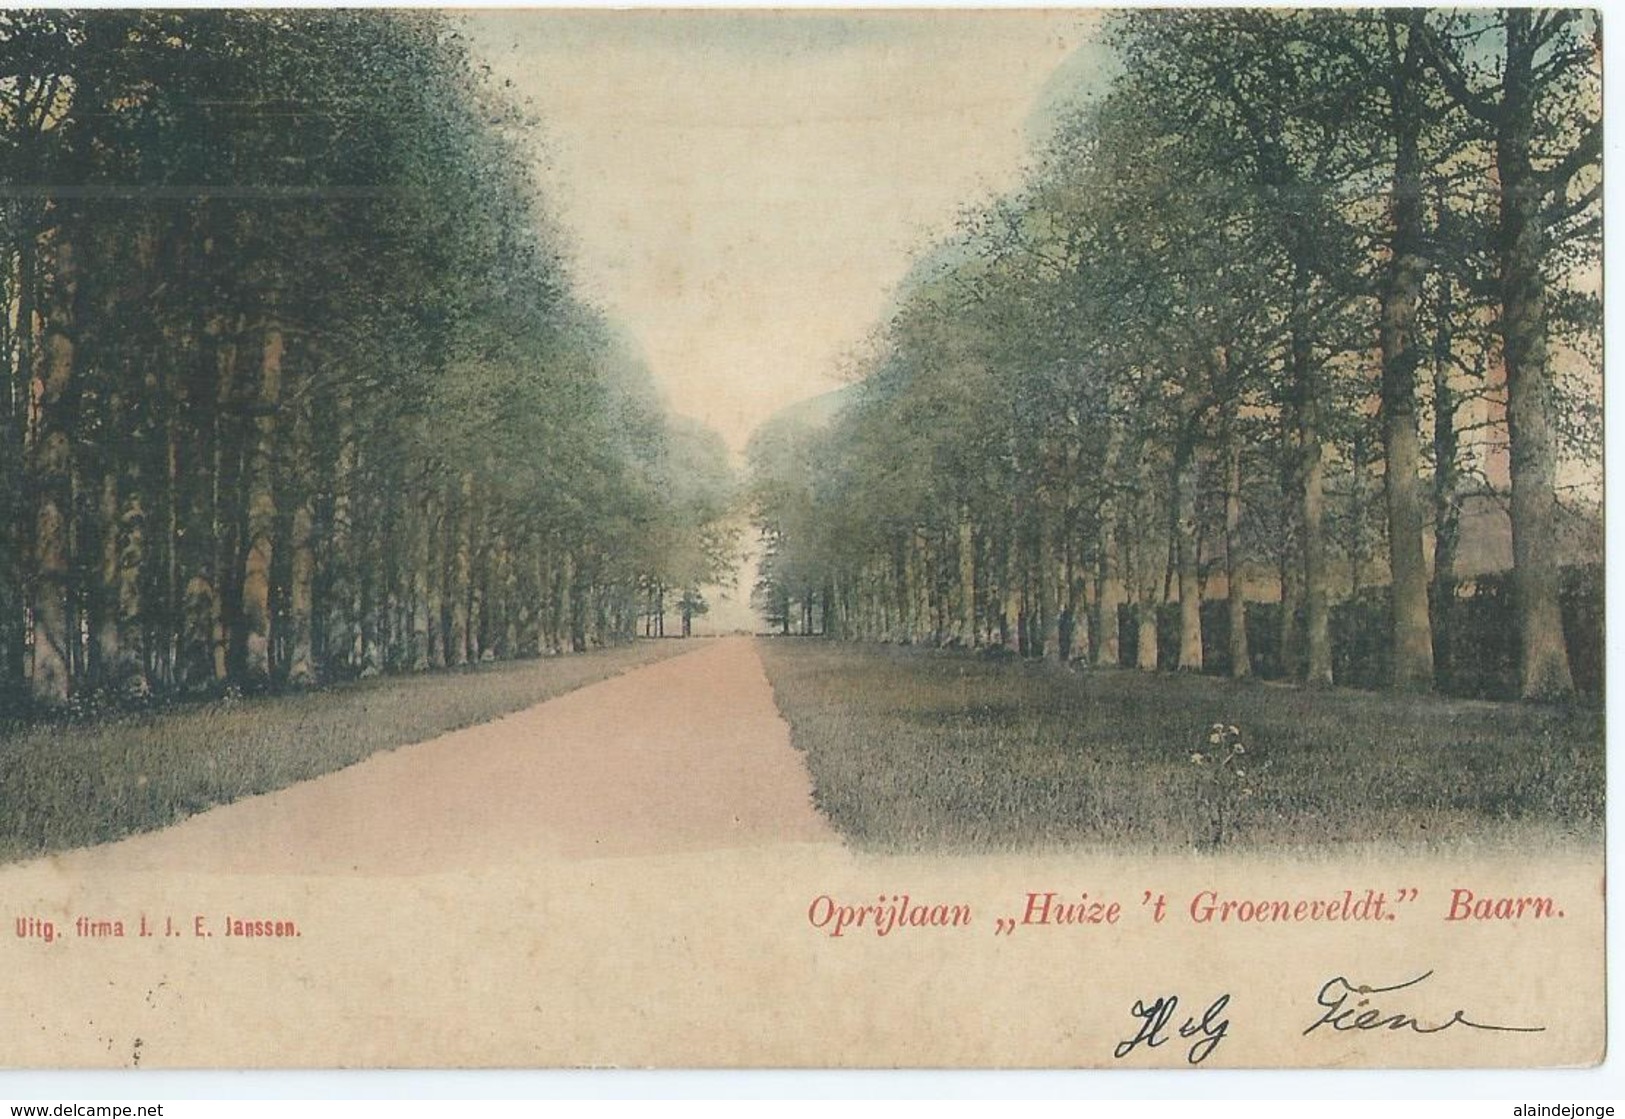 Baarn - Oprijlaan " Huize 't Groeneveldt " - Uitg. Firma J.J.E. Janssen - 1904 - Baarn